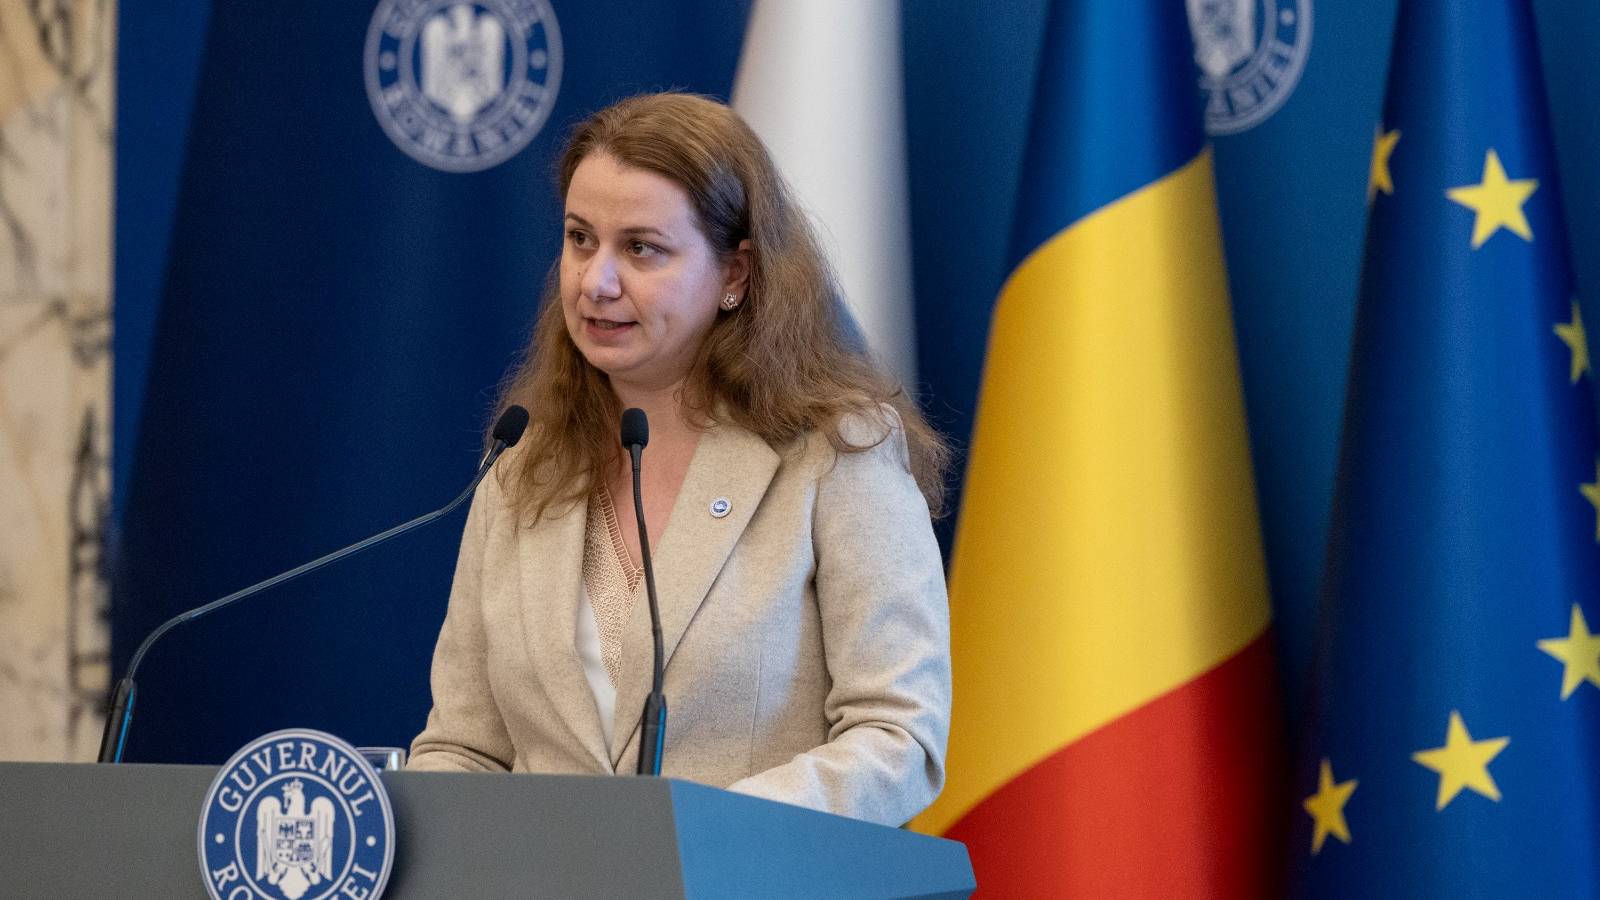 Le Ministre de l'Éducation a annoncé les mesures de changements de DERNIÈRE MINUTE imposées au système éducatif roumain